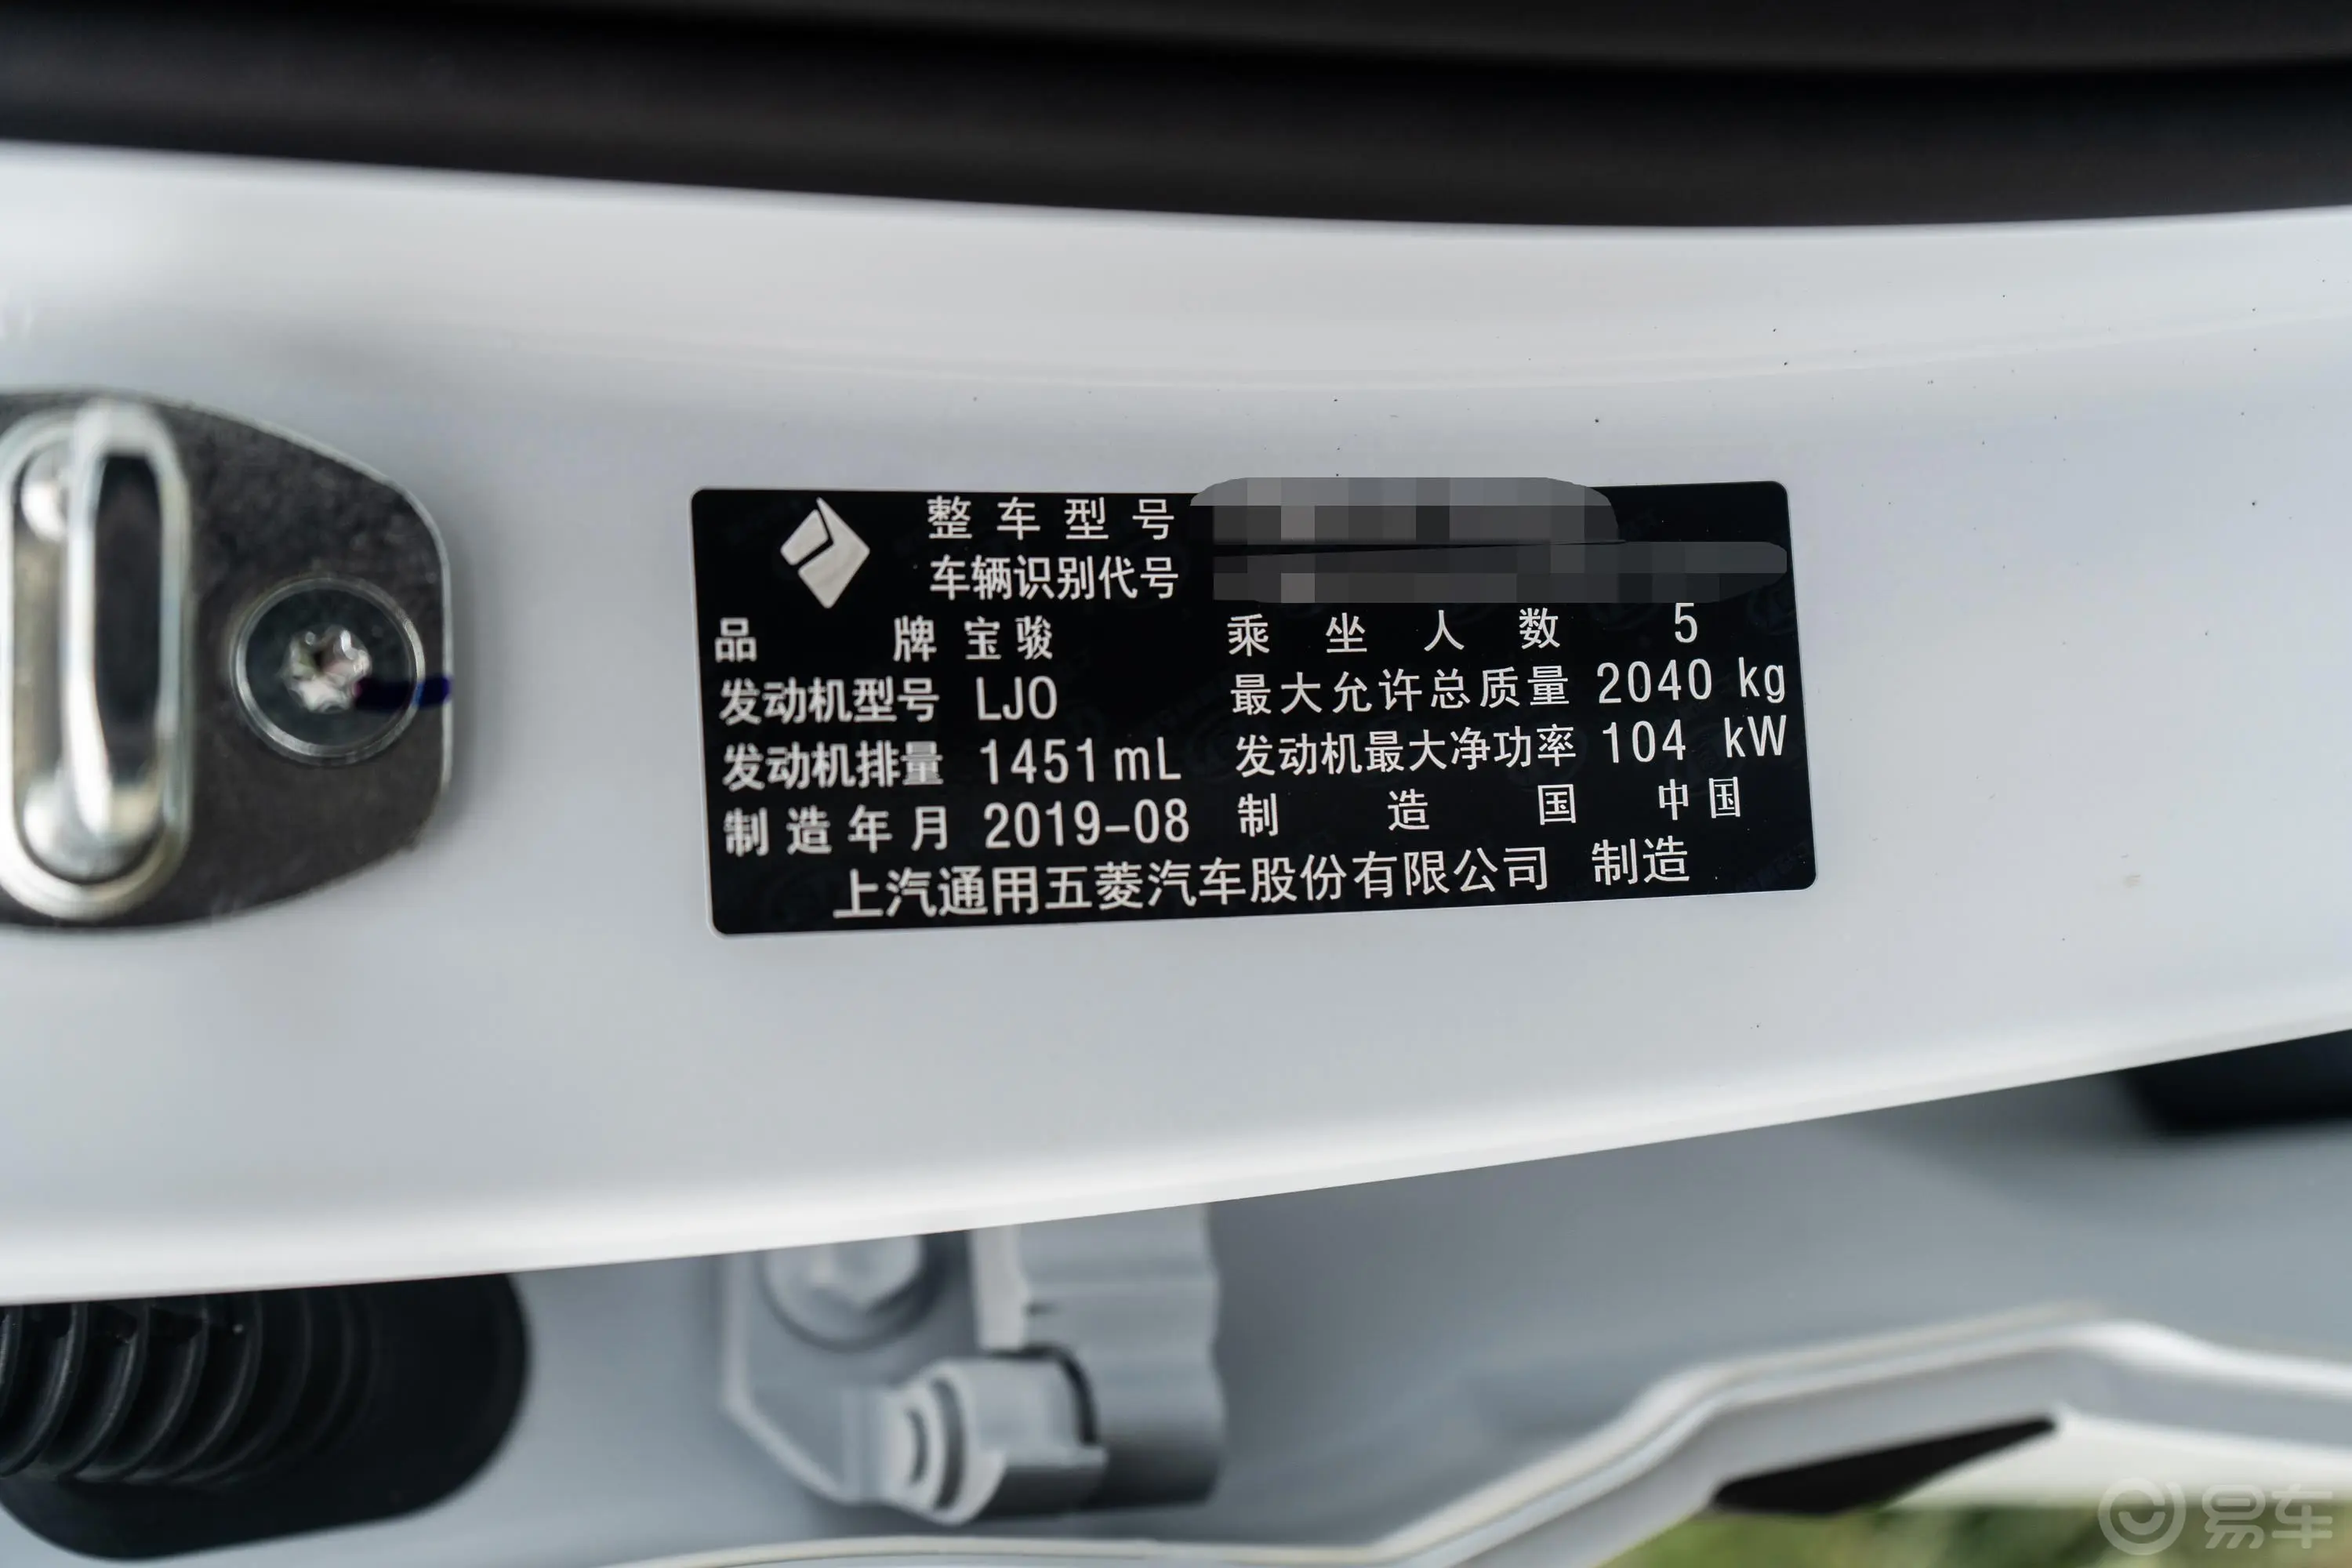 宝骏RS-51.5T CVT 智能驾控豪华版 国VI车辆信息铭牌